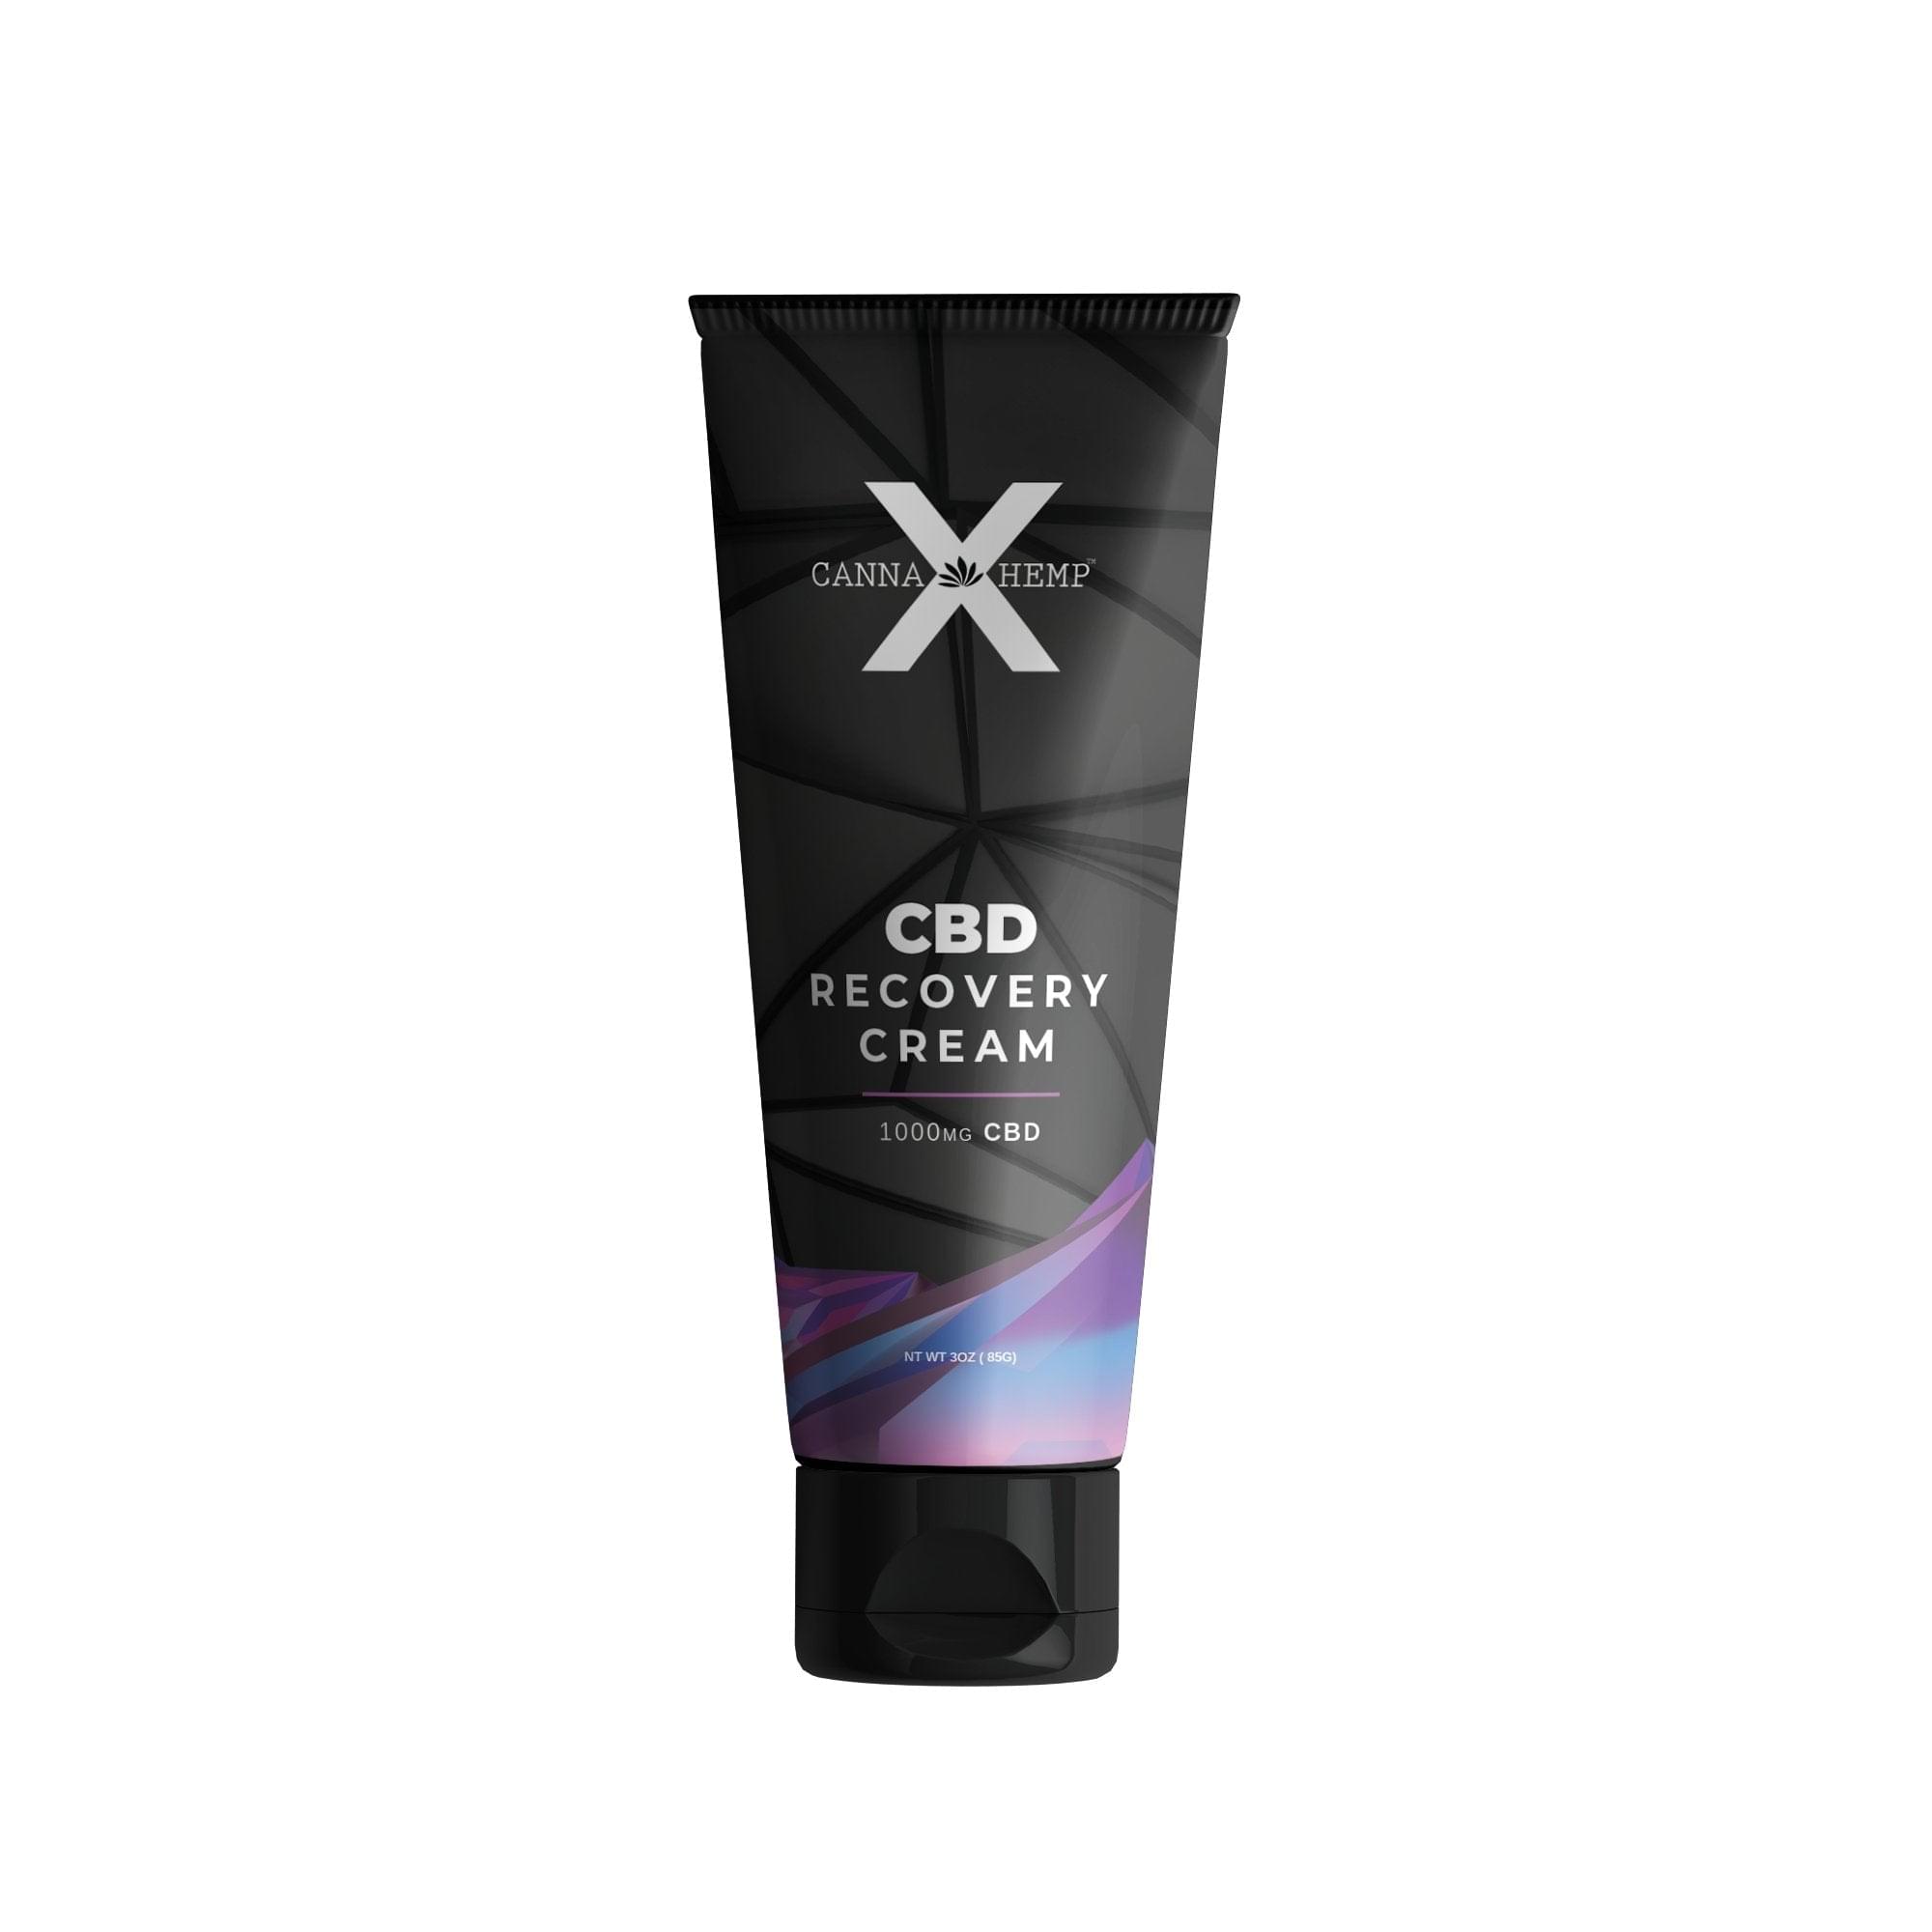 CBD Canna Hemp X Recovery Cream 1000mg Best Price